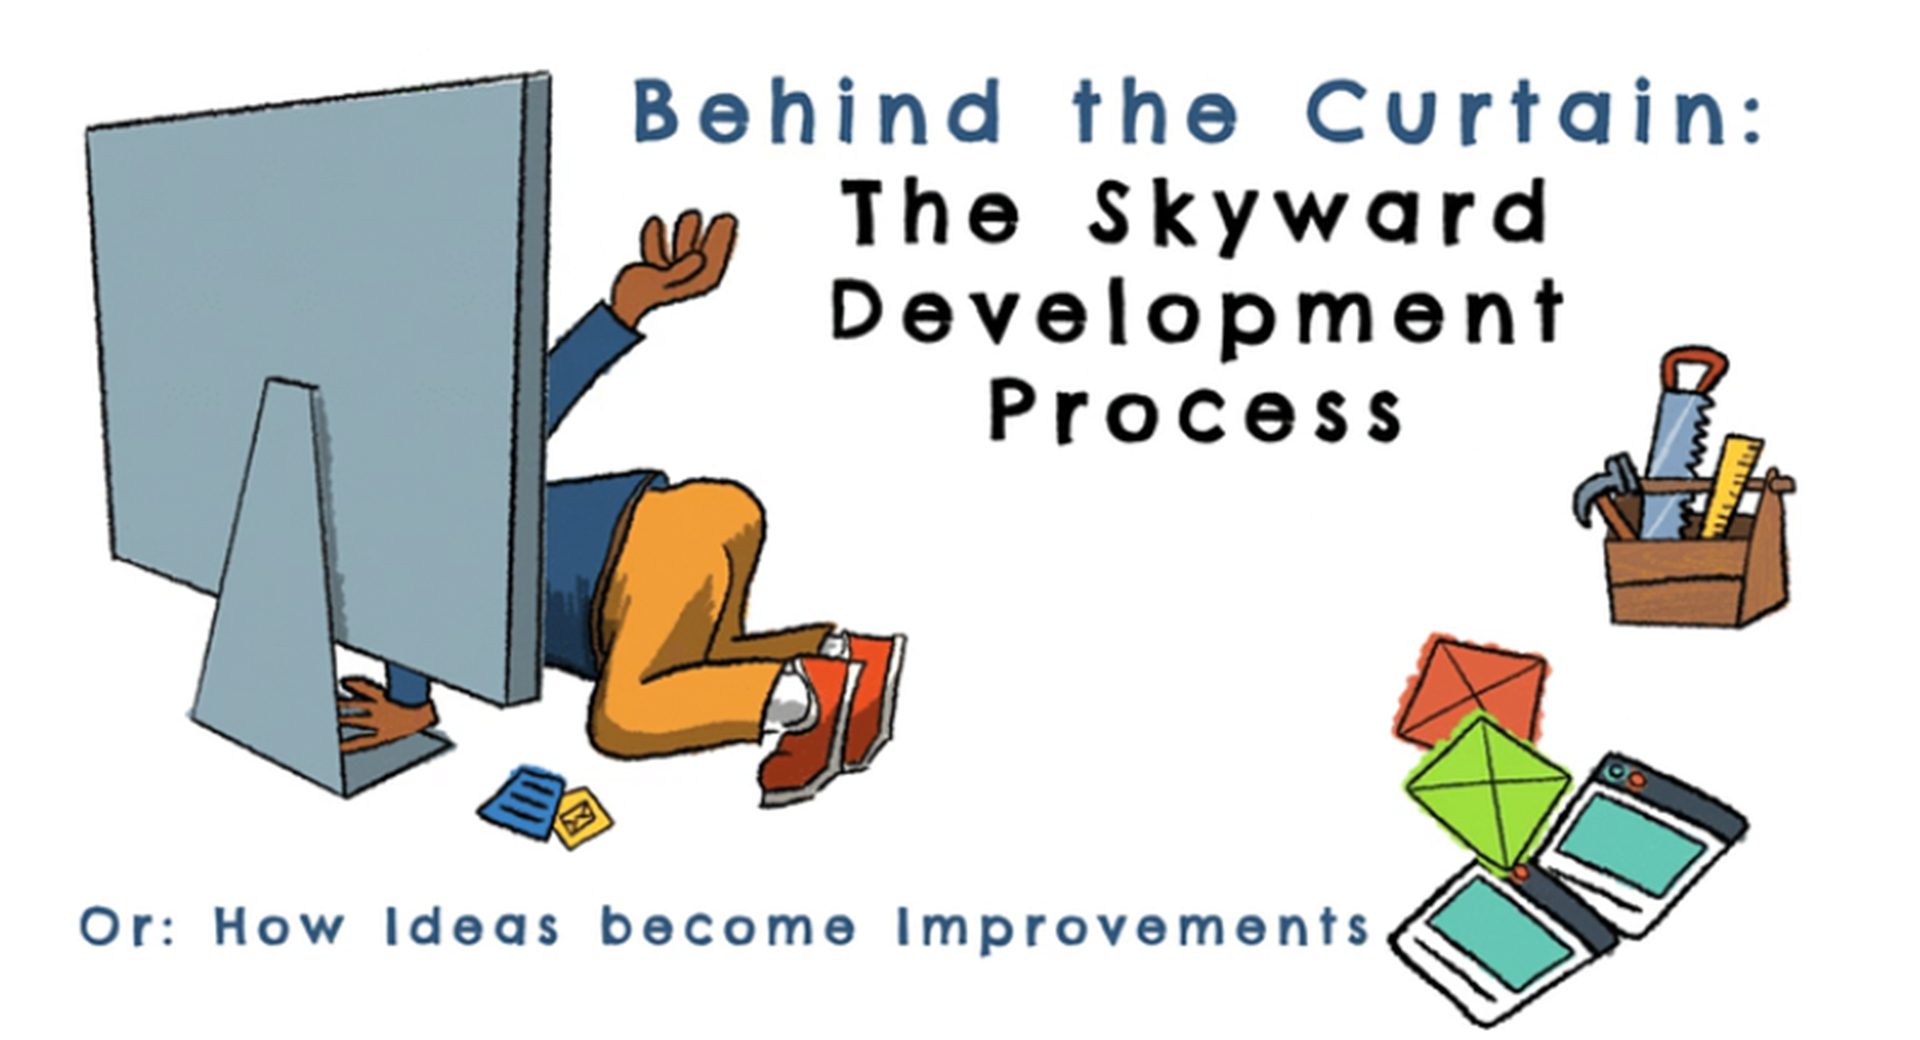 The Skyward Development Process